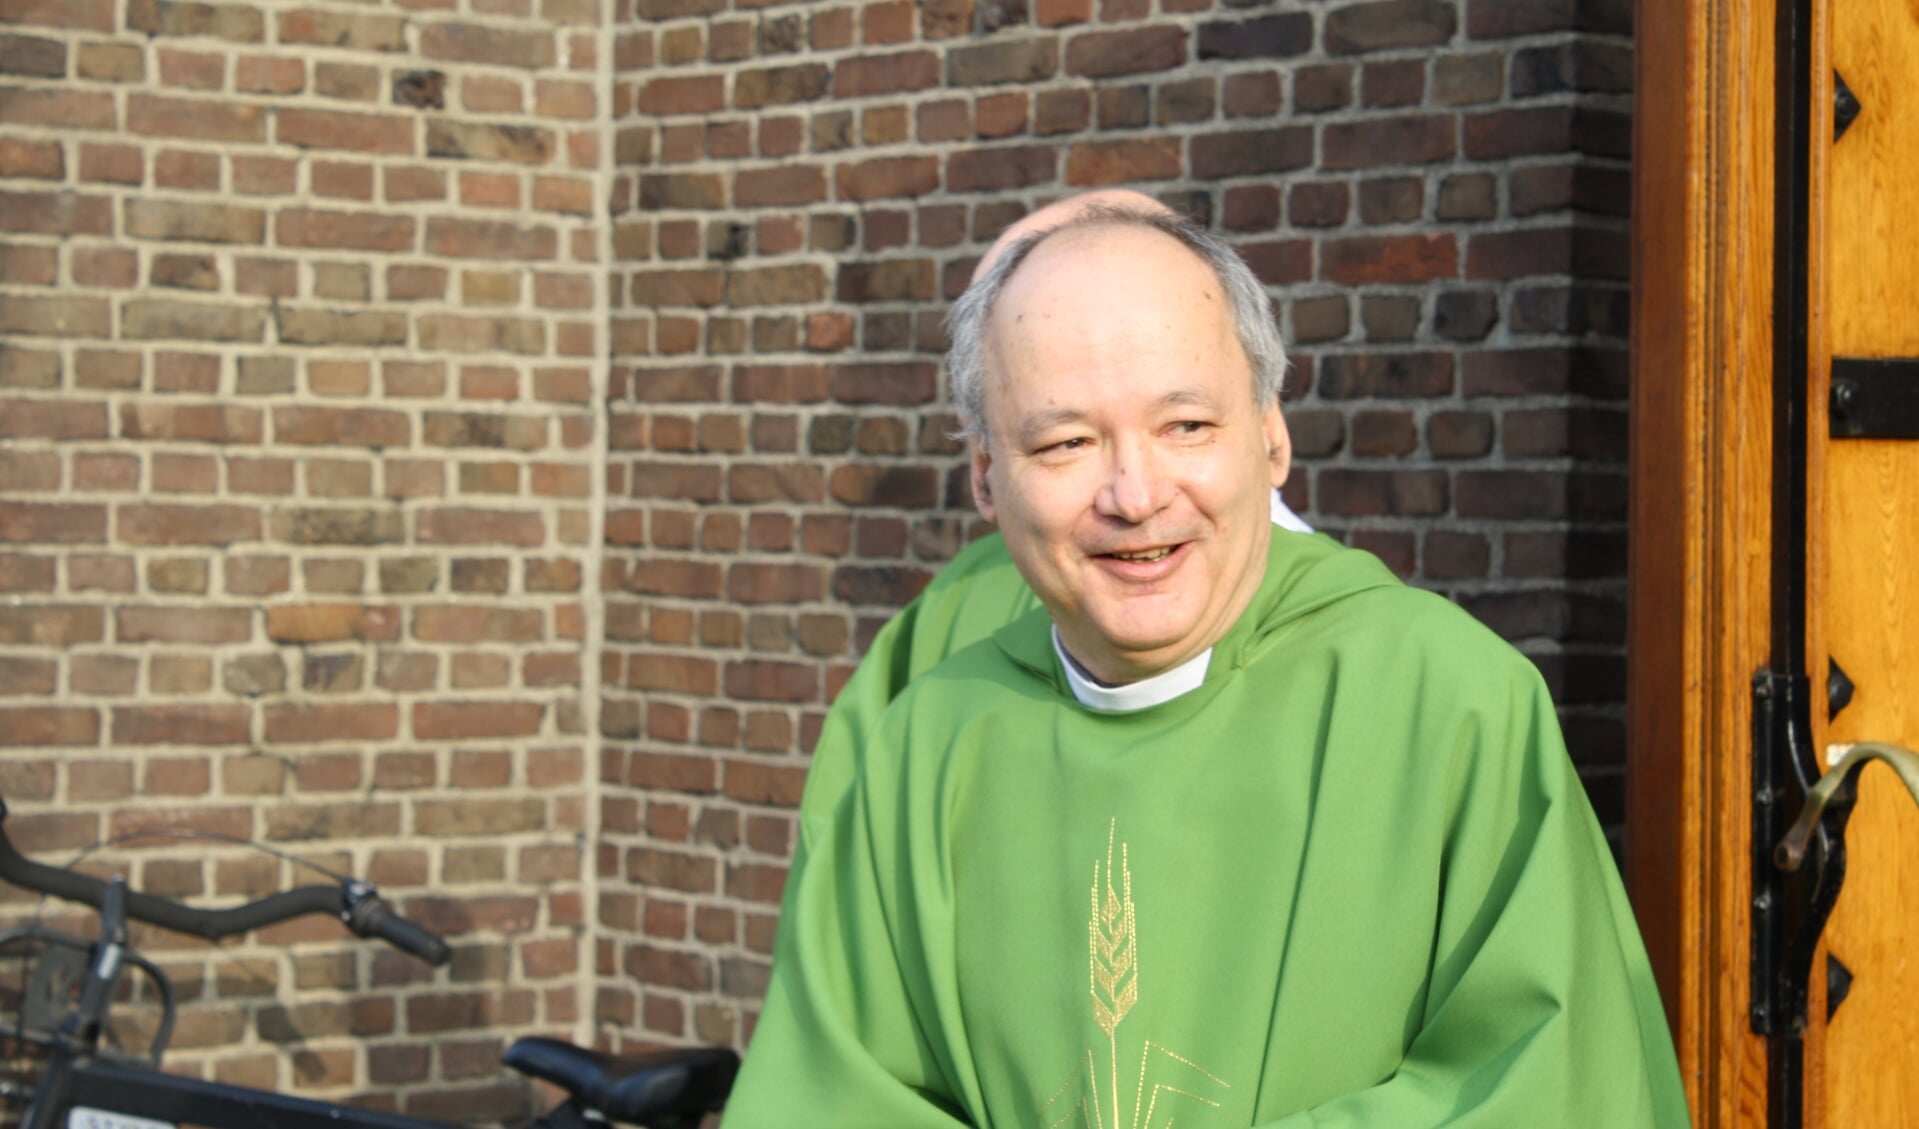 Pastoor Franken verhuist naar de Augustinusparochie in Katwijk. | Foto en tekst: Piet de Boer.